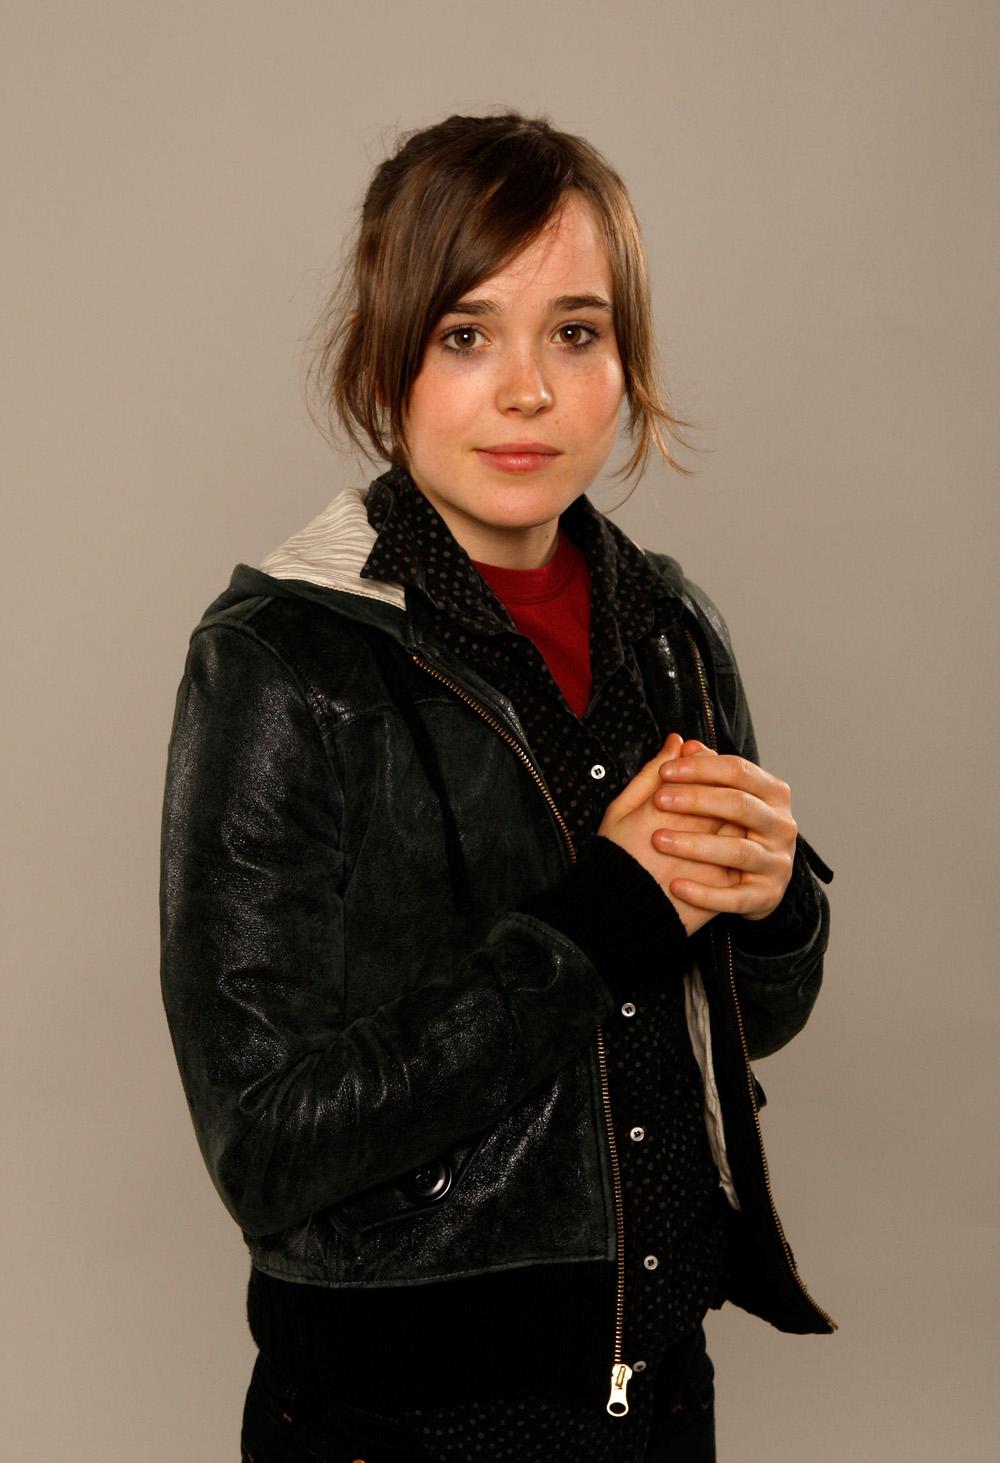 Photo №11592 Ellen Page.